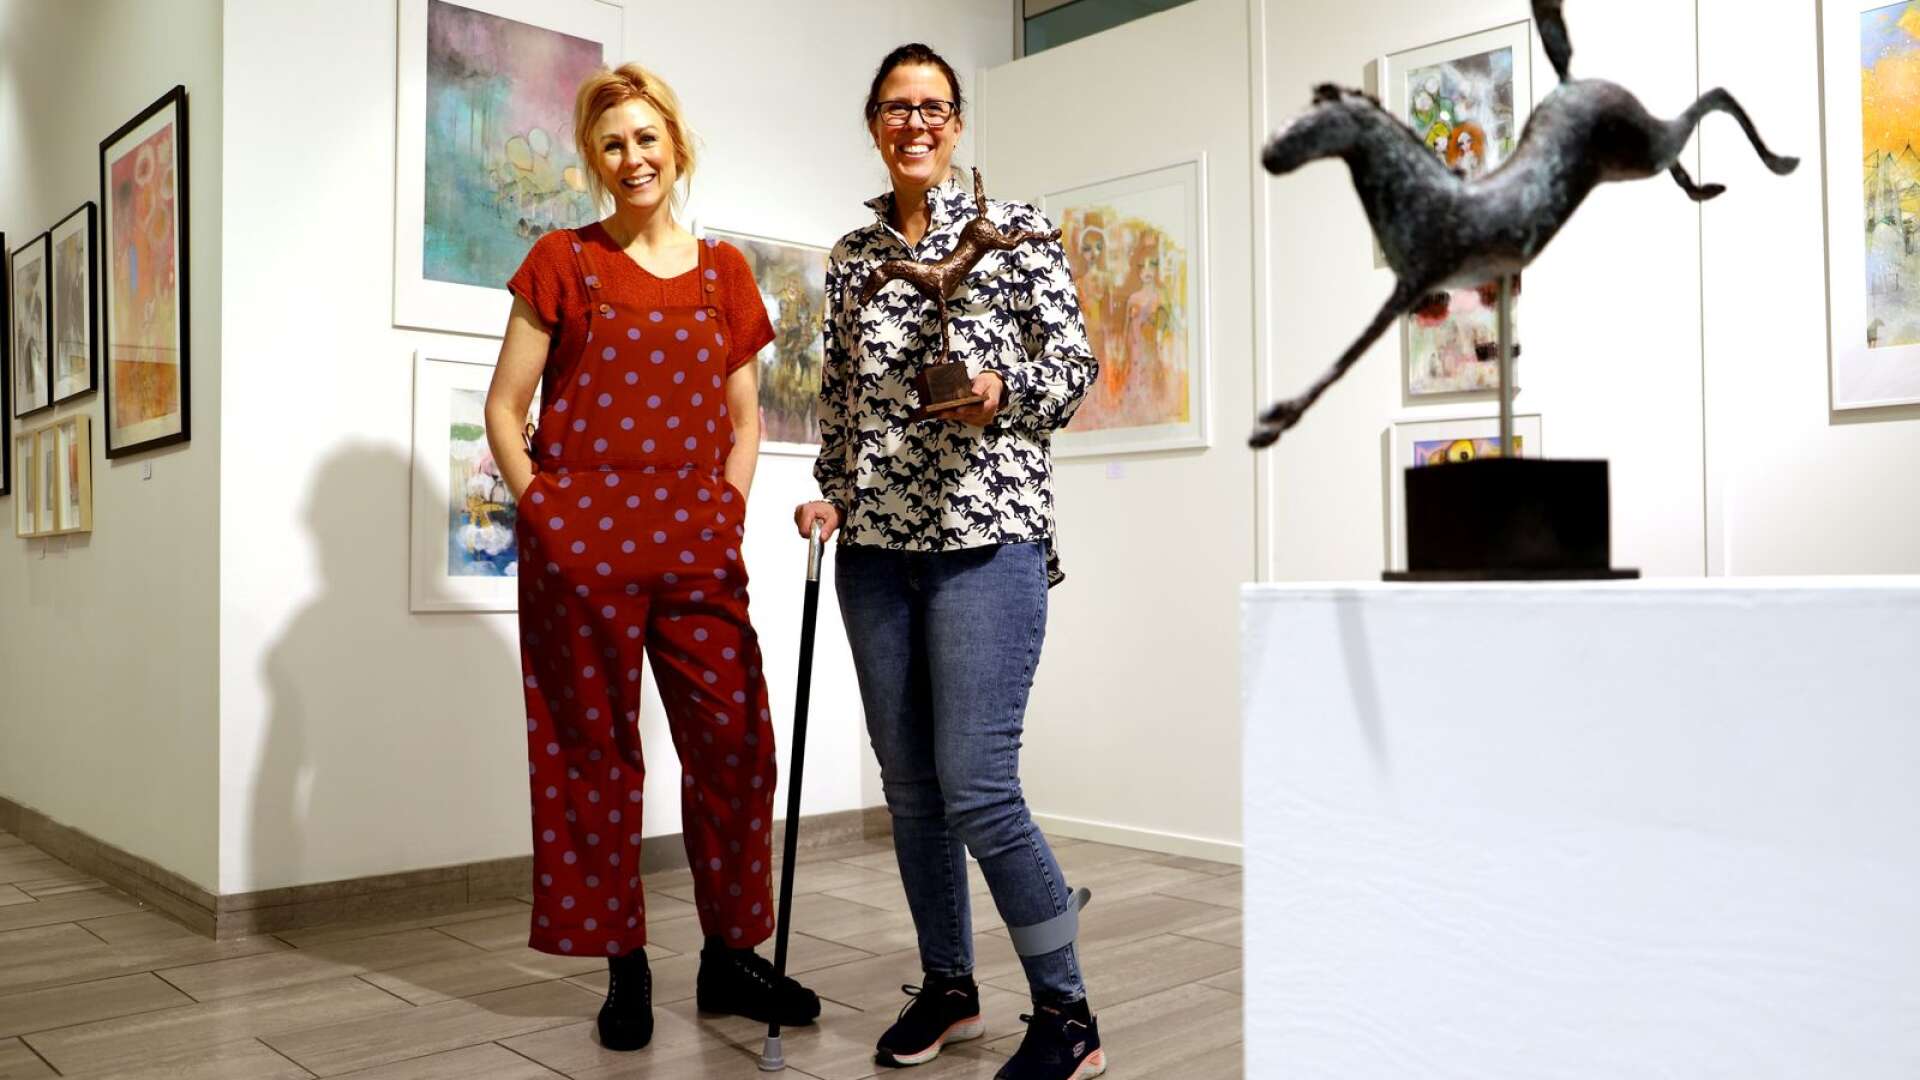 Sofia Linder ställer ut måleri och Sofia Eberhard hästskulpturer. Båda är från Karlstad, men lärde känna varandra först via konsten och Instagram. Nu gör de gemensam sak på Carlstad art gallery. ”En sagolik utställning” visas till den 29 maj.